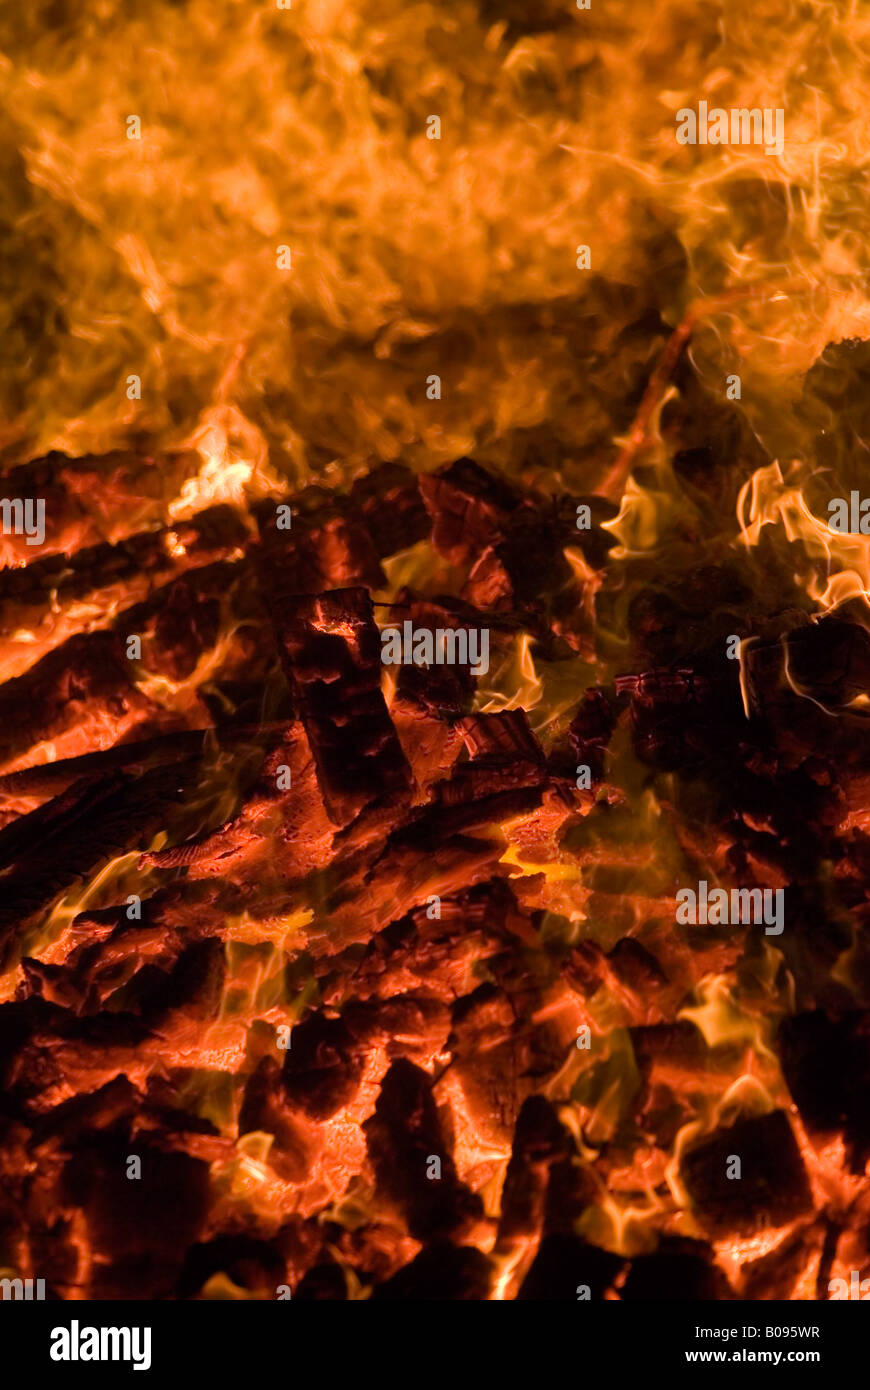 Burning wood, logs, firewood Stock Photo